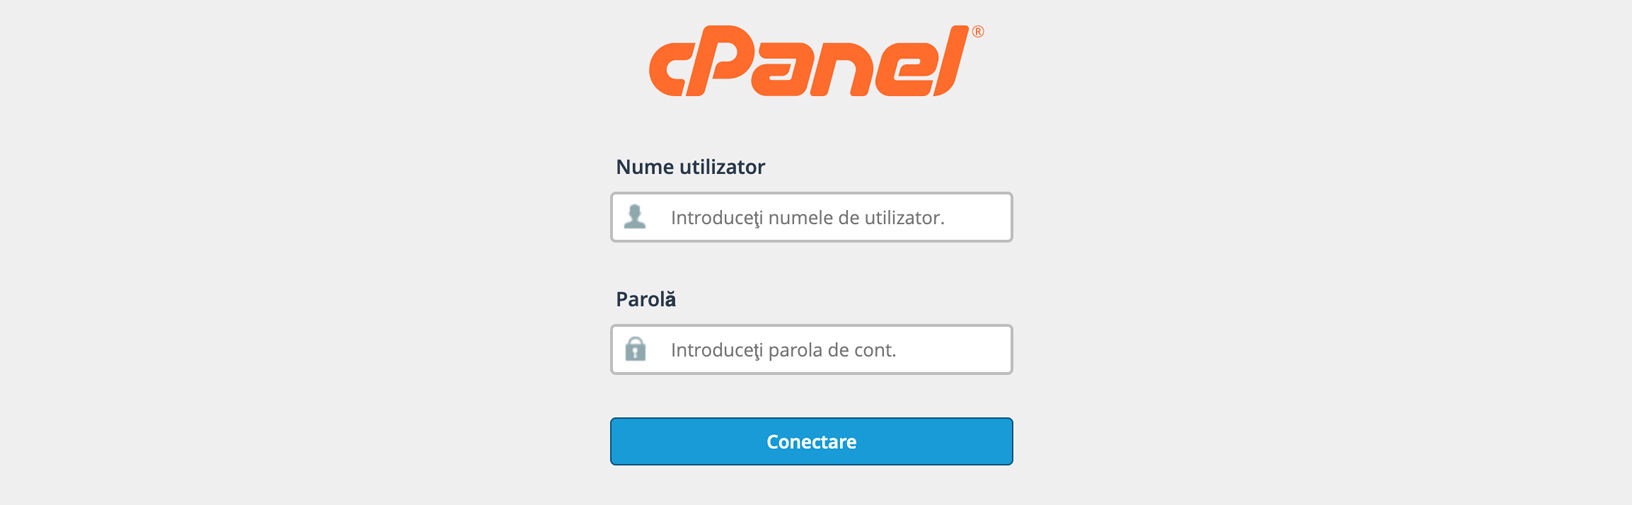 conectare cPanel